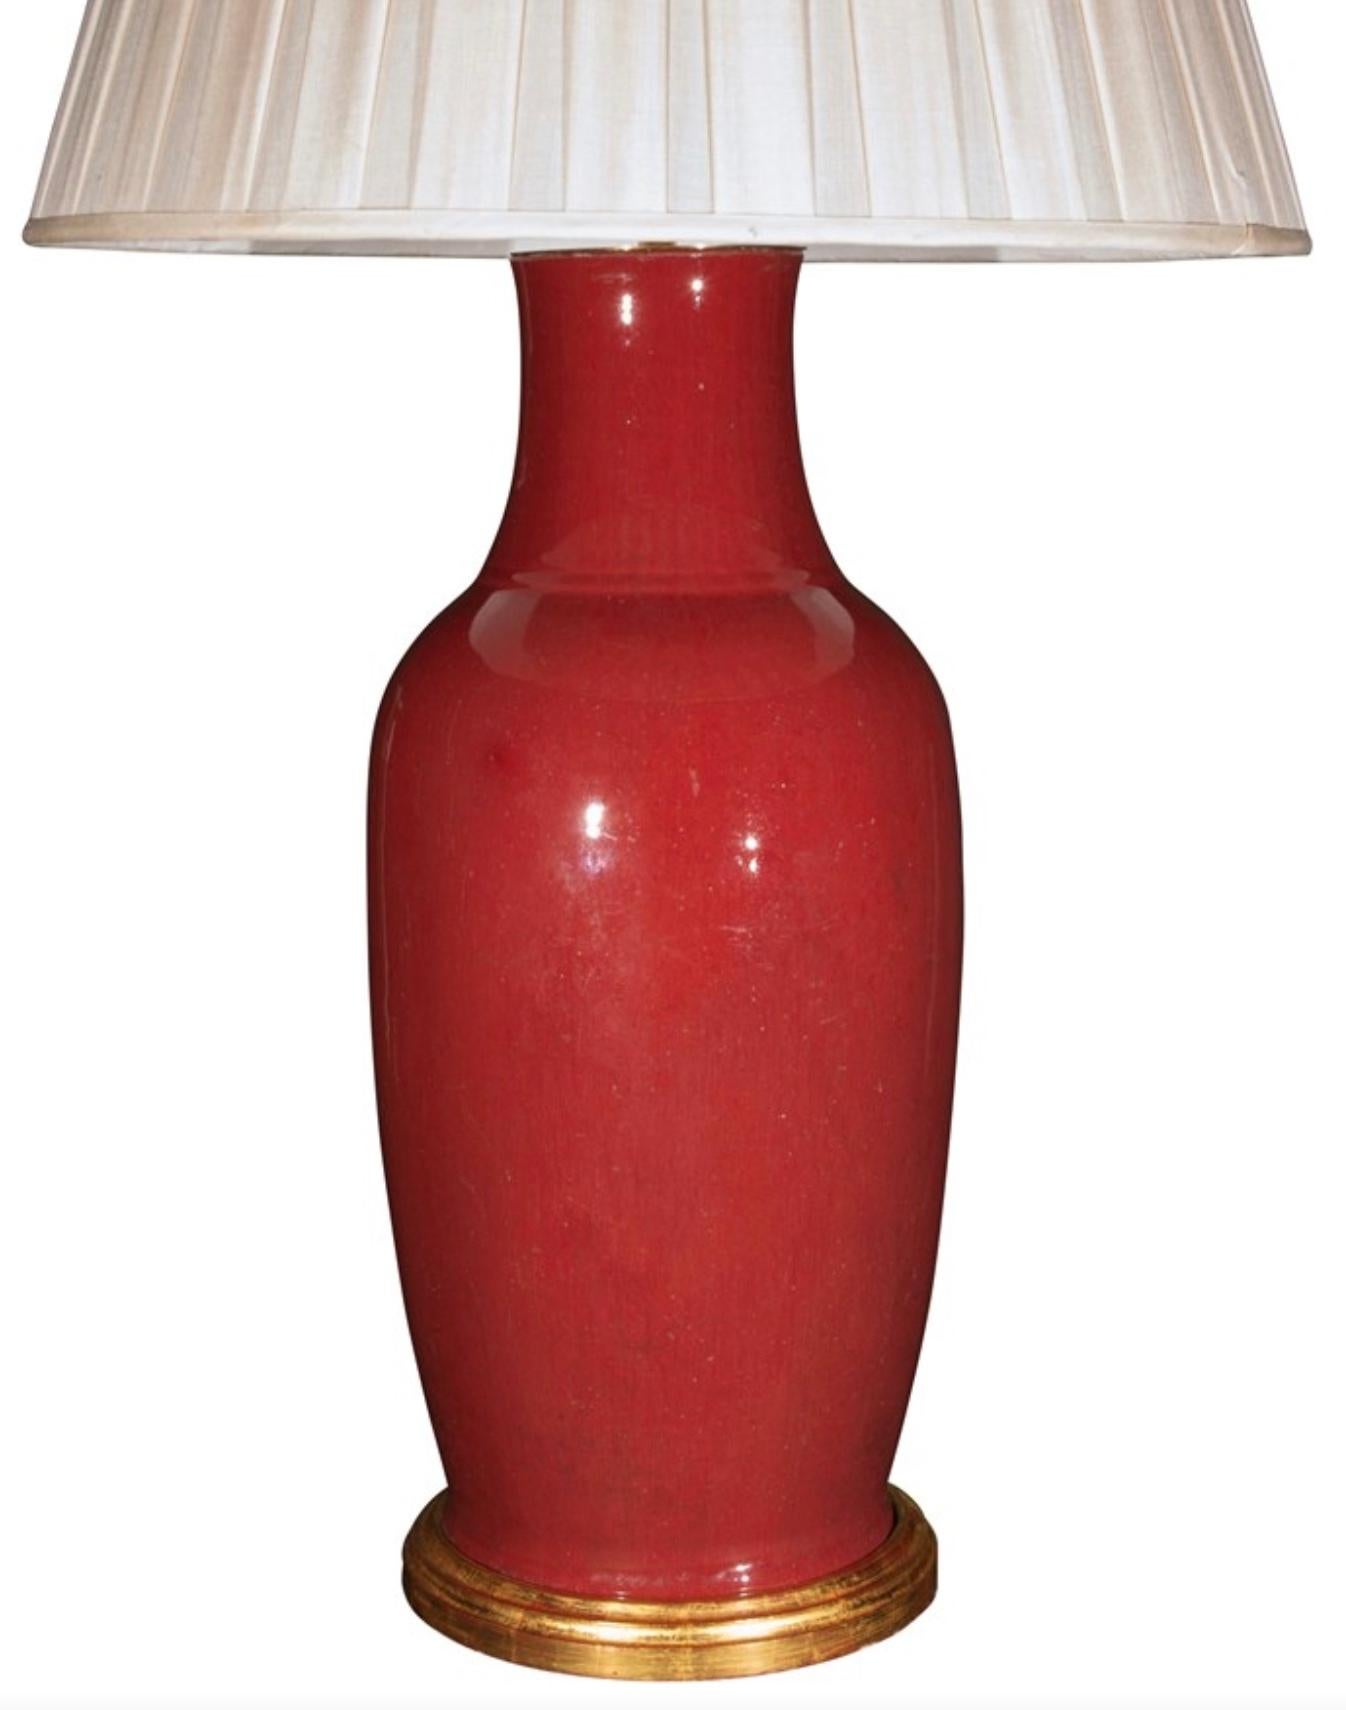 Eine feine chinesische Sang de Boeuf-Porzellanvase mit einer wunderbaren, tiefrot gesprenkelten Glasur, jetzt als Lampe mit einem handvergoldeten, gedrehten Sockel montiert.

Höhe der Vase: 56 cm (22 Zoll) einschließlich des Sockels aus Goldholz,